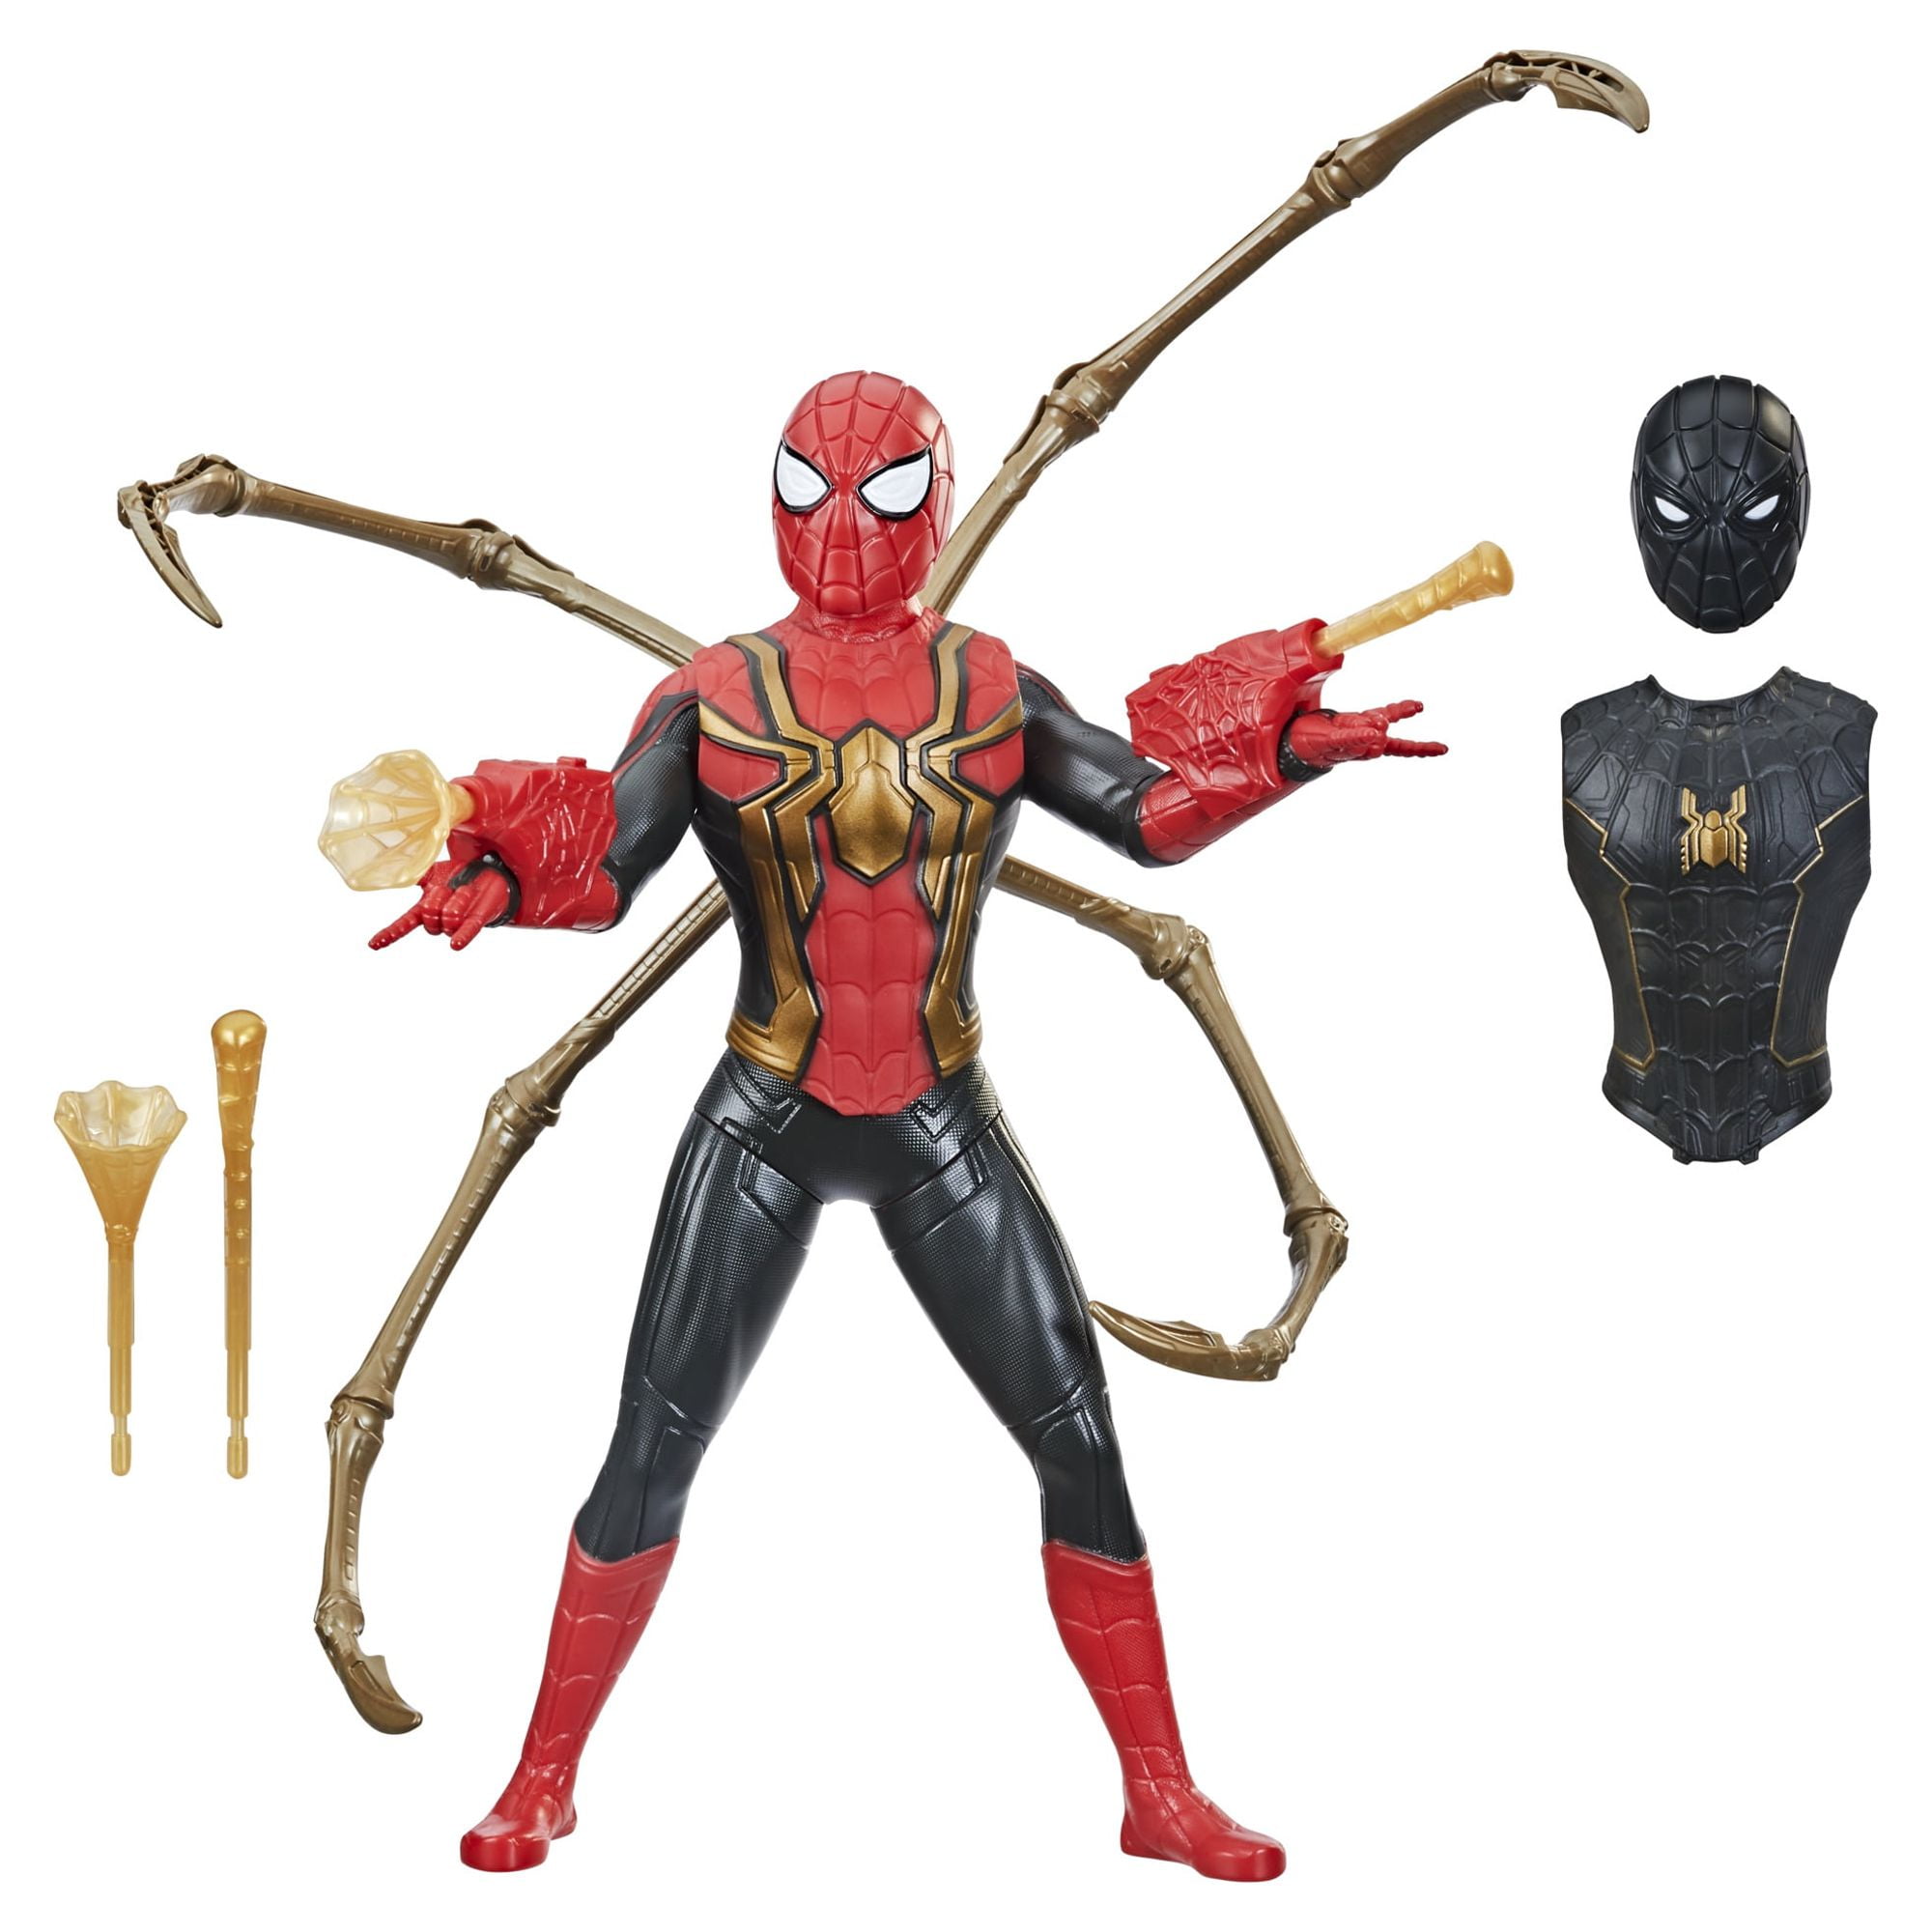 Veilleuse spiderman+figurine Spiderman - Philips